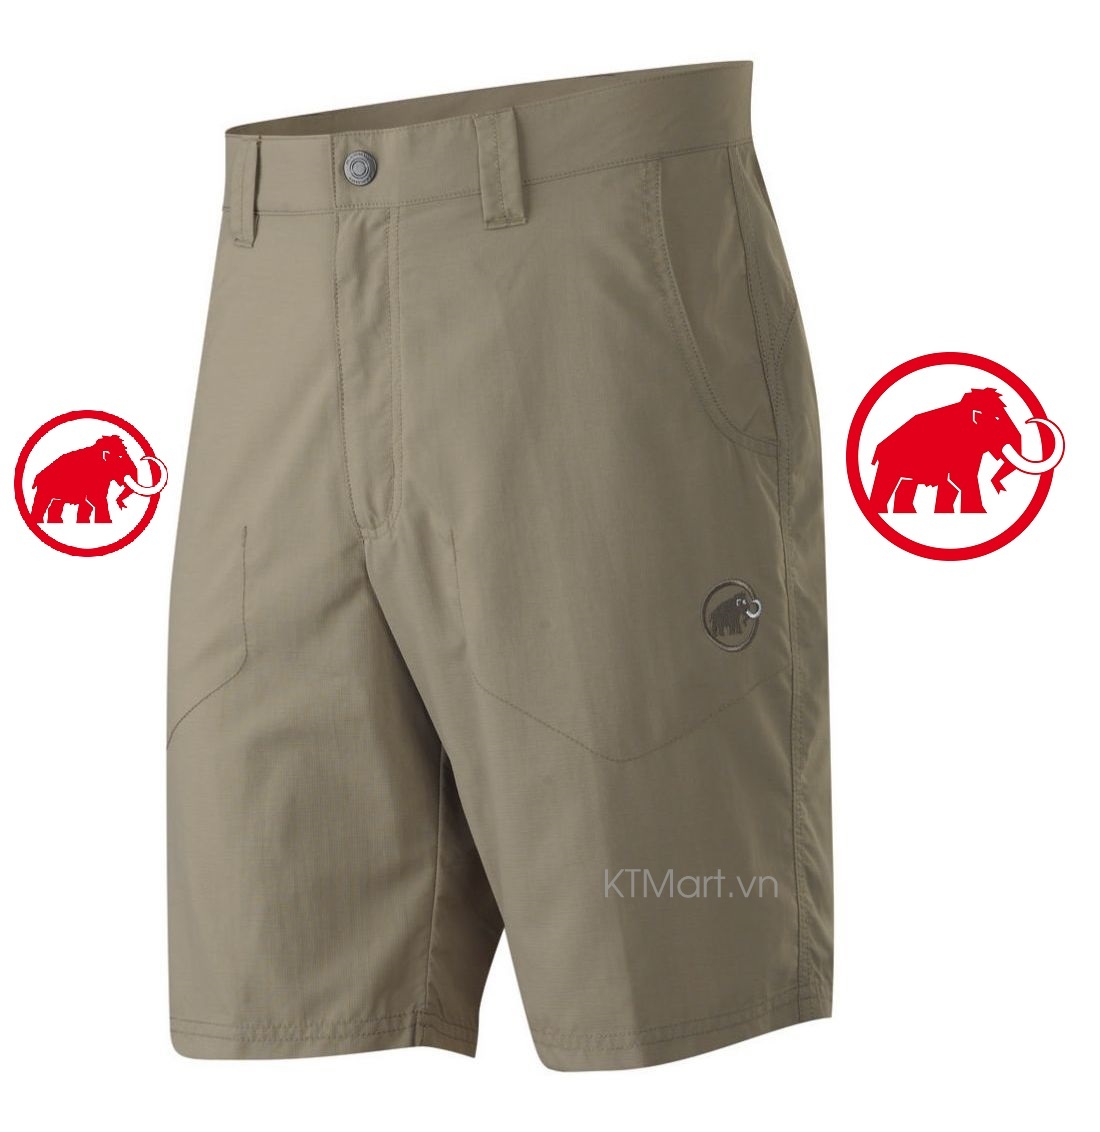 Mammut Crags Shorts 1020-05461 Mammut size 28